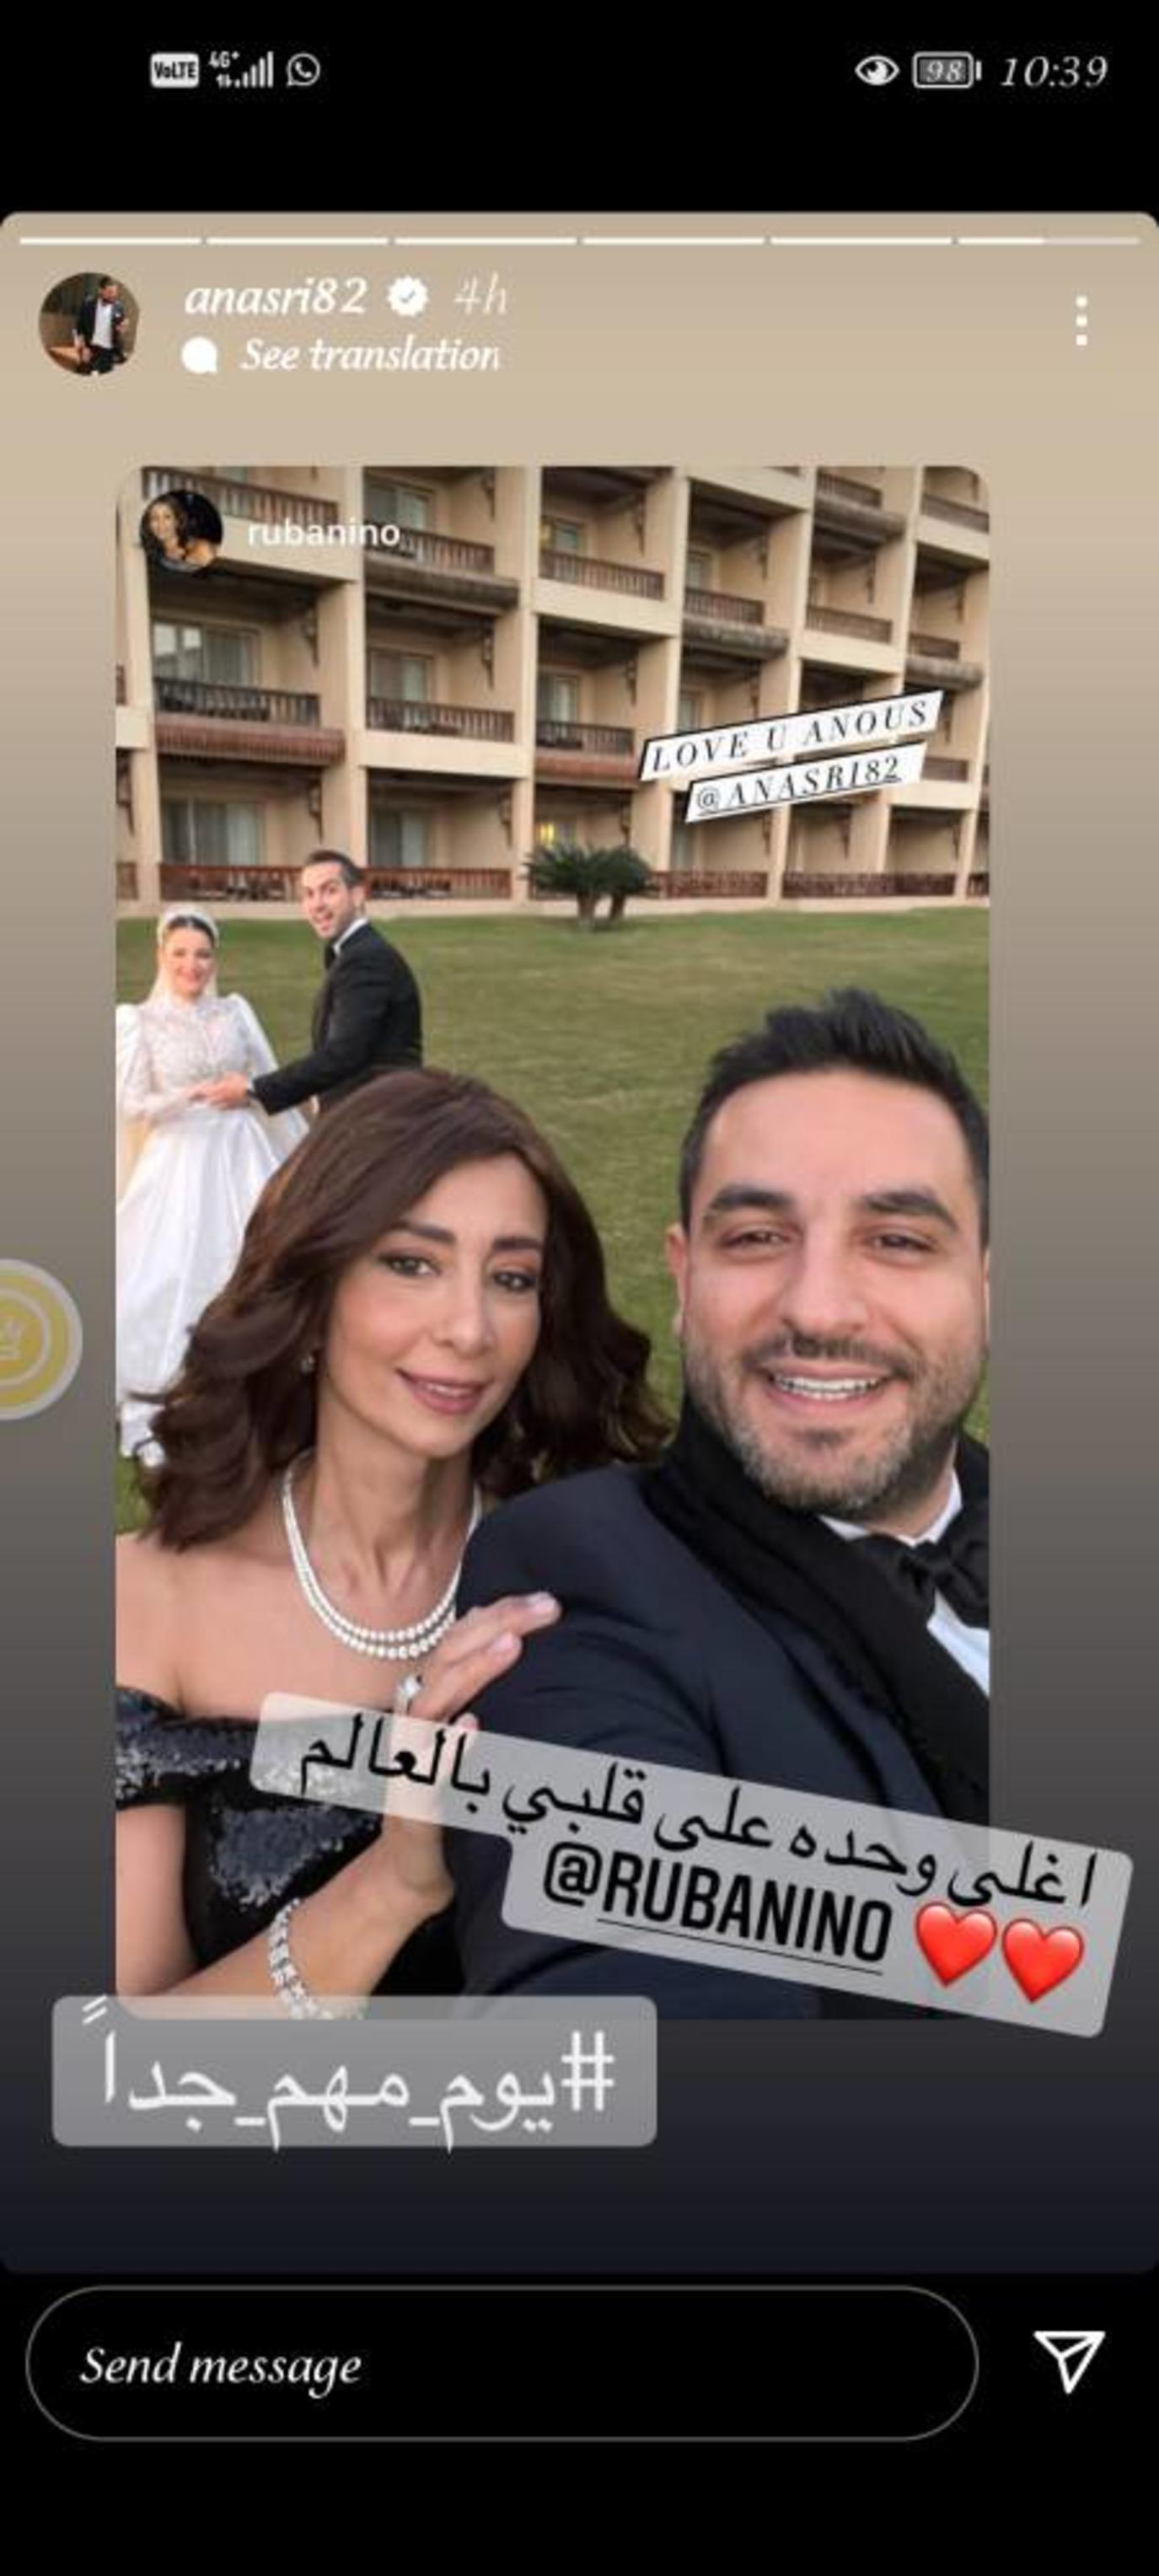 شام الذهبي وزوجها أحمد هلال - الصورة من حساب أنس نصري على إنستجرام